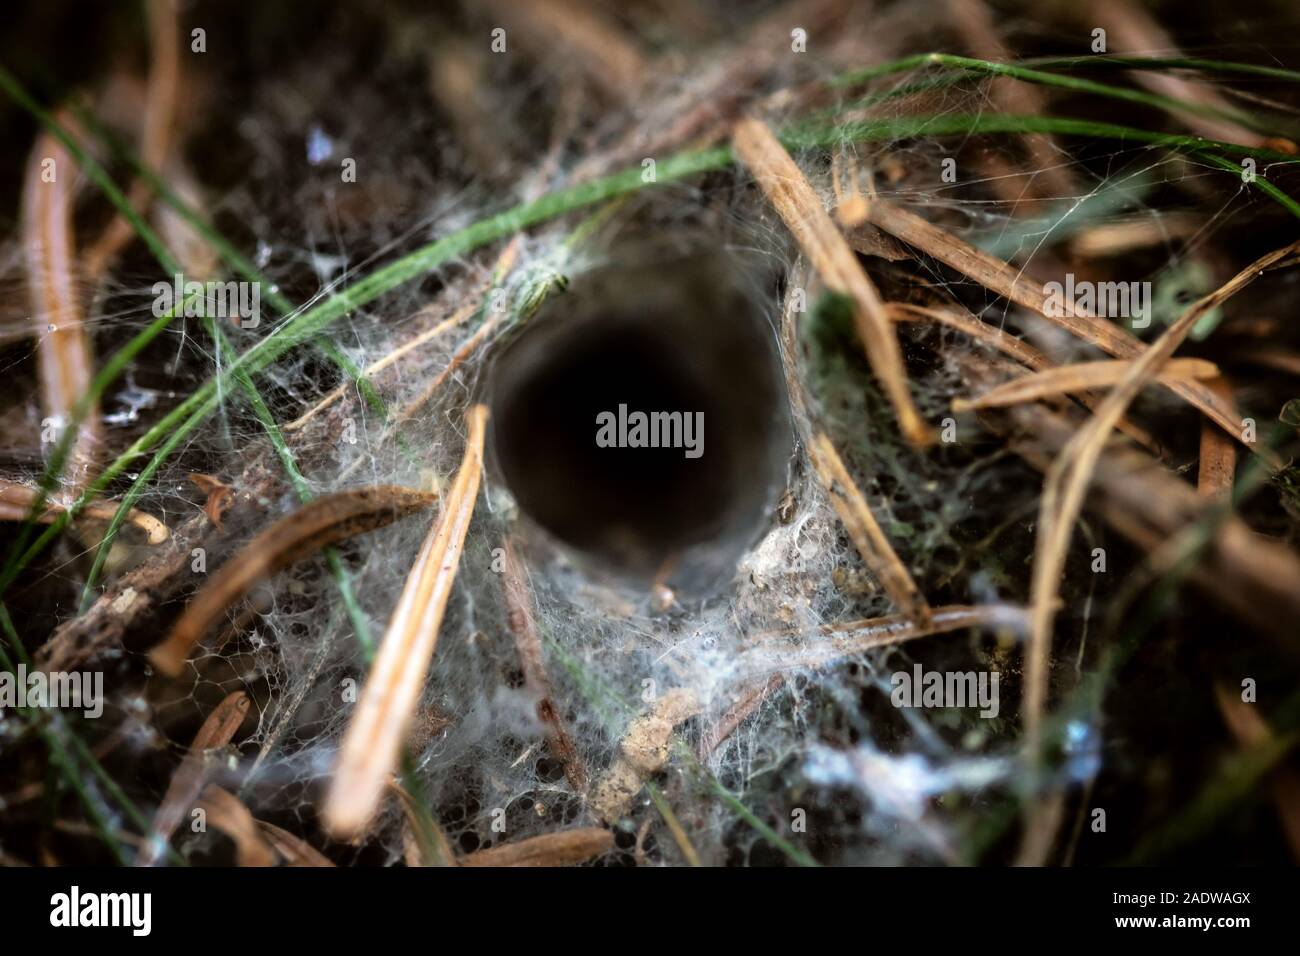 Gros plan, Spider web entonnoir nichent sur le sol d'une forêt, d'une araignée Agelenidae Banque D'Images